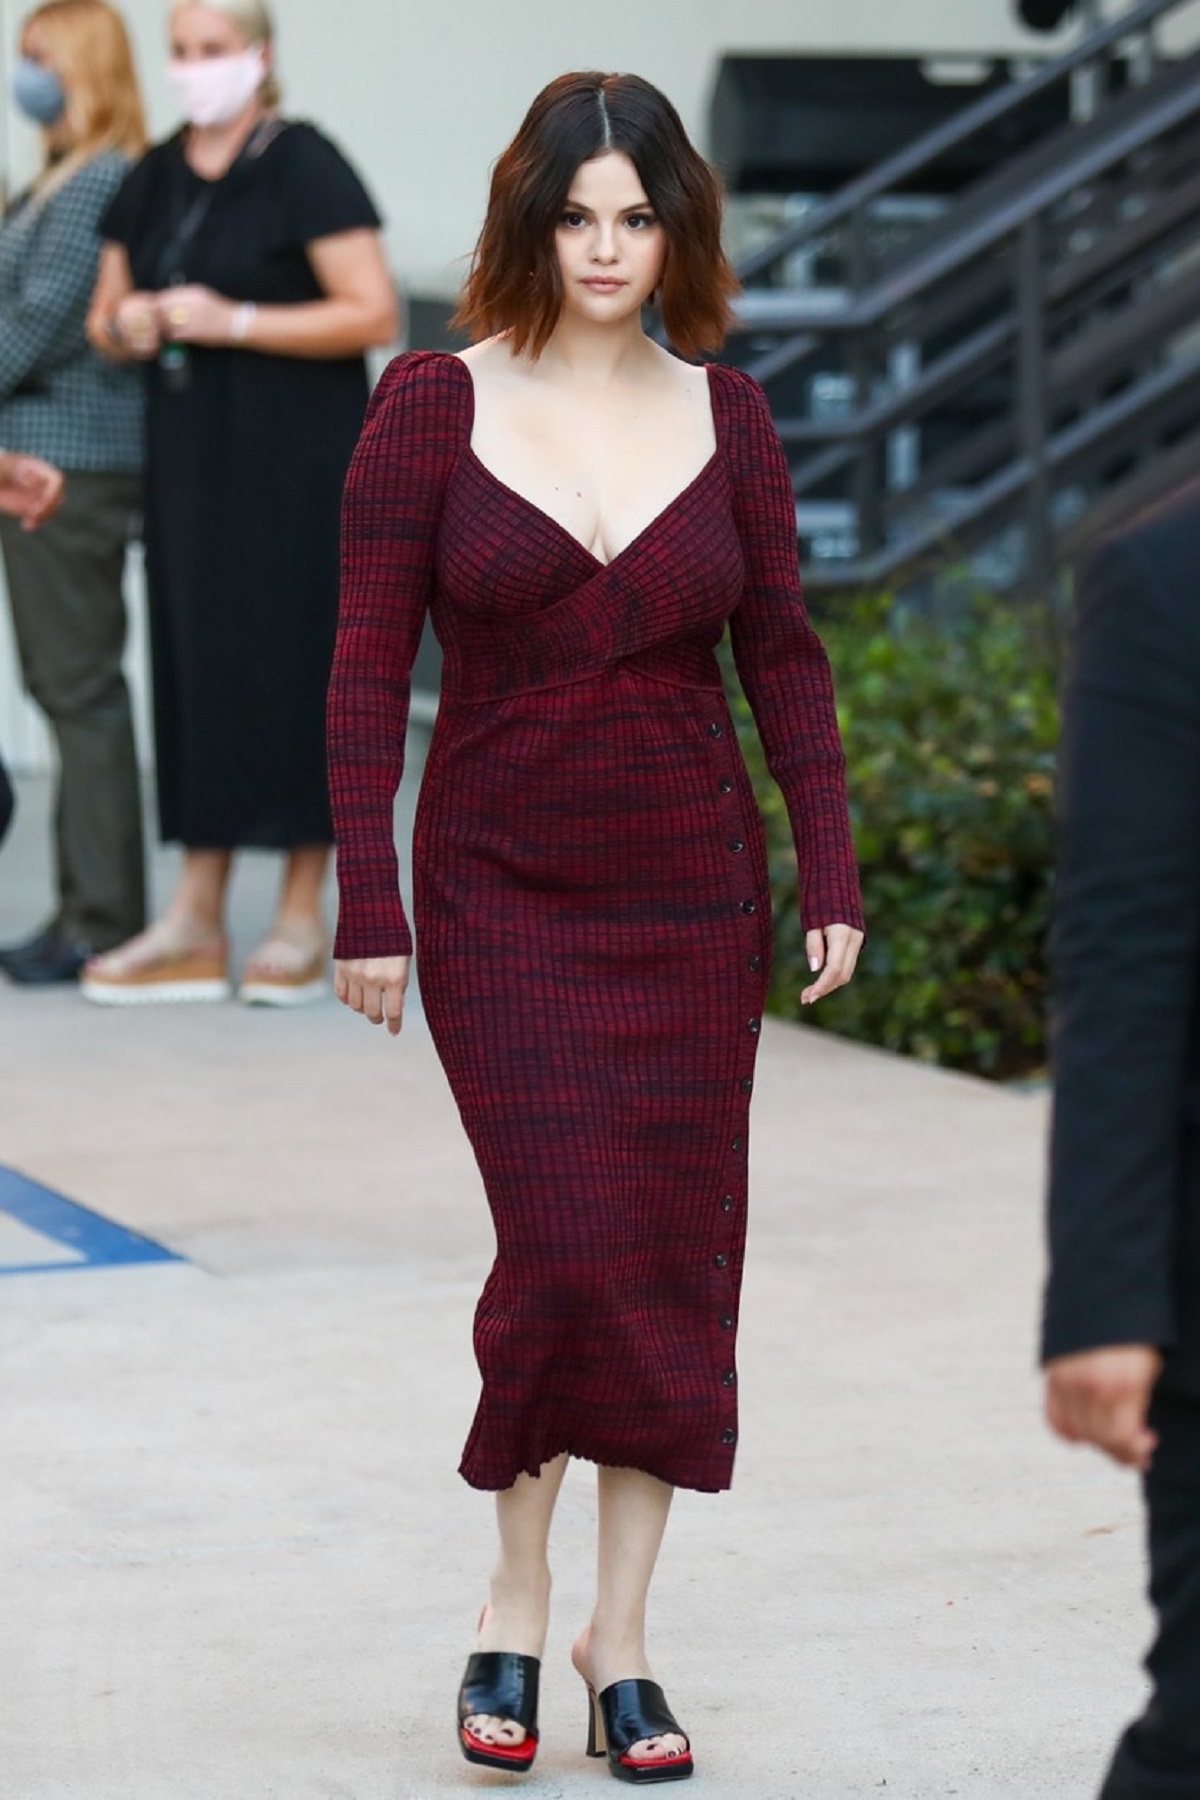 Selena Gmez într-o rochie elegantă burgundy în timp ce vine la un interviu din Los Angeles